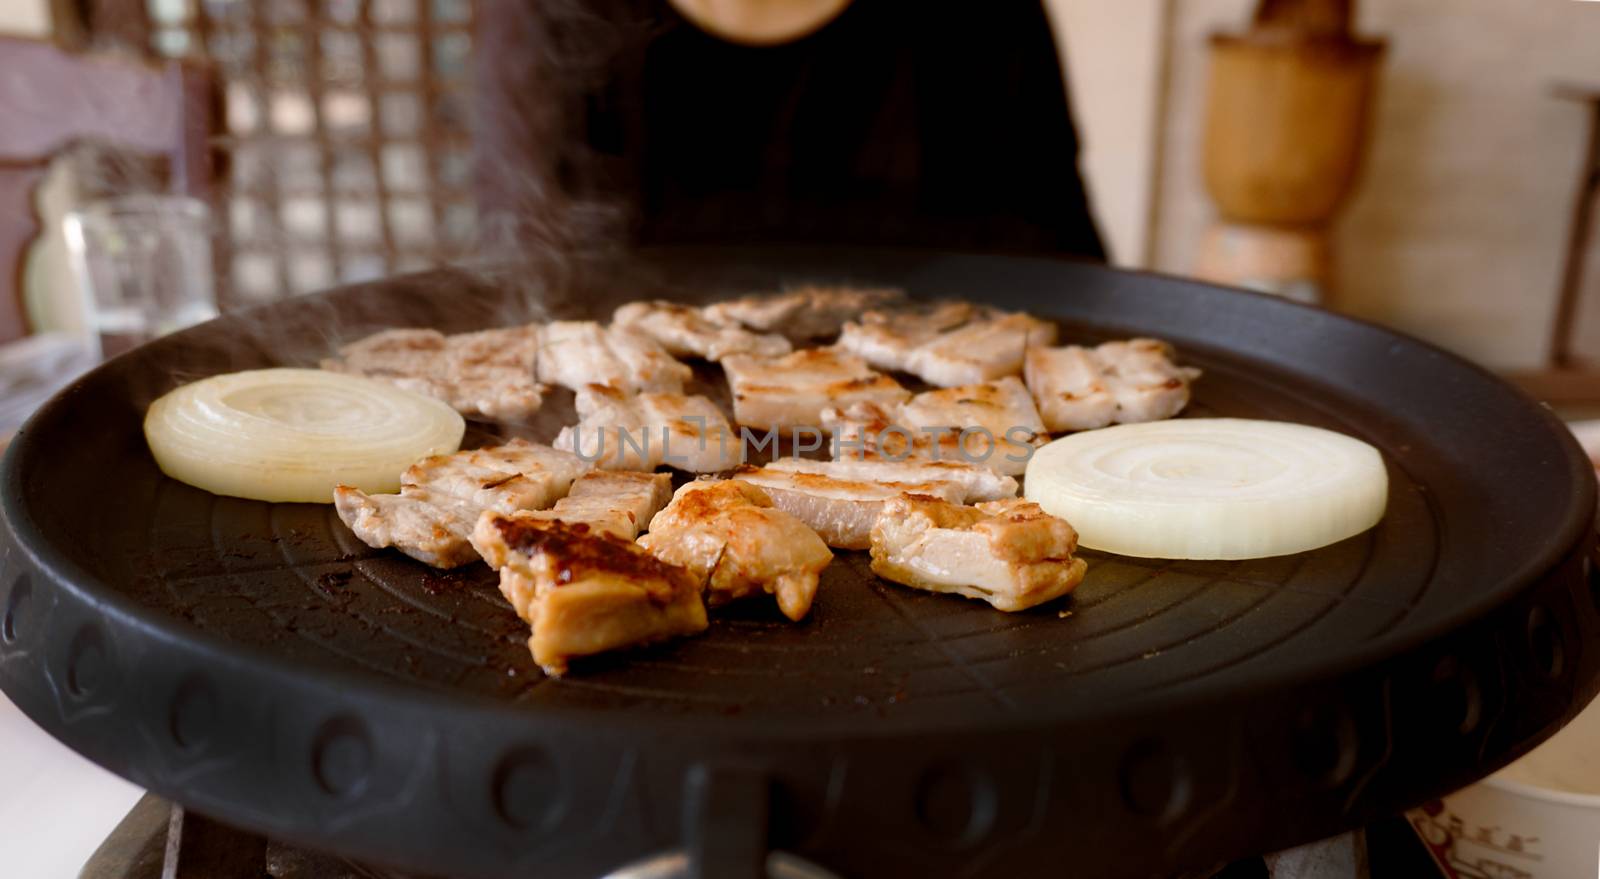 Korean BBQ grilled on pan.